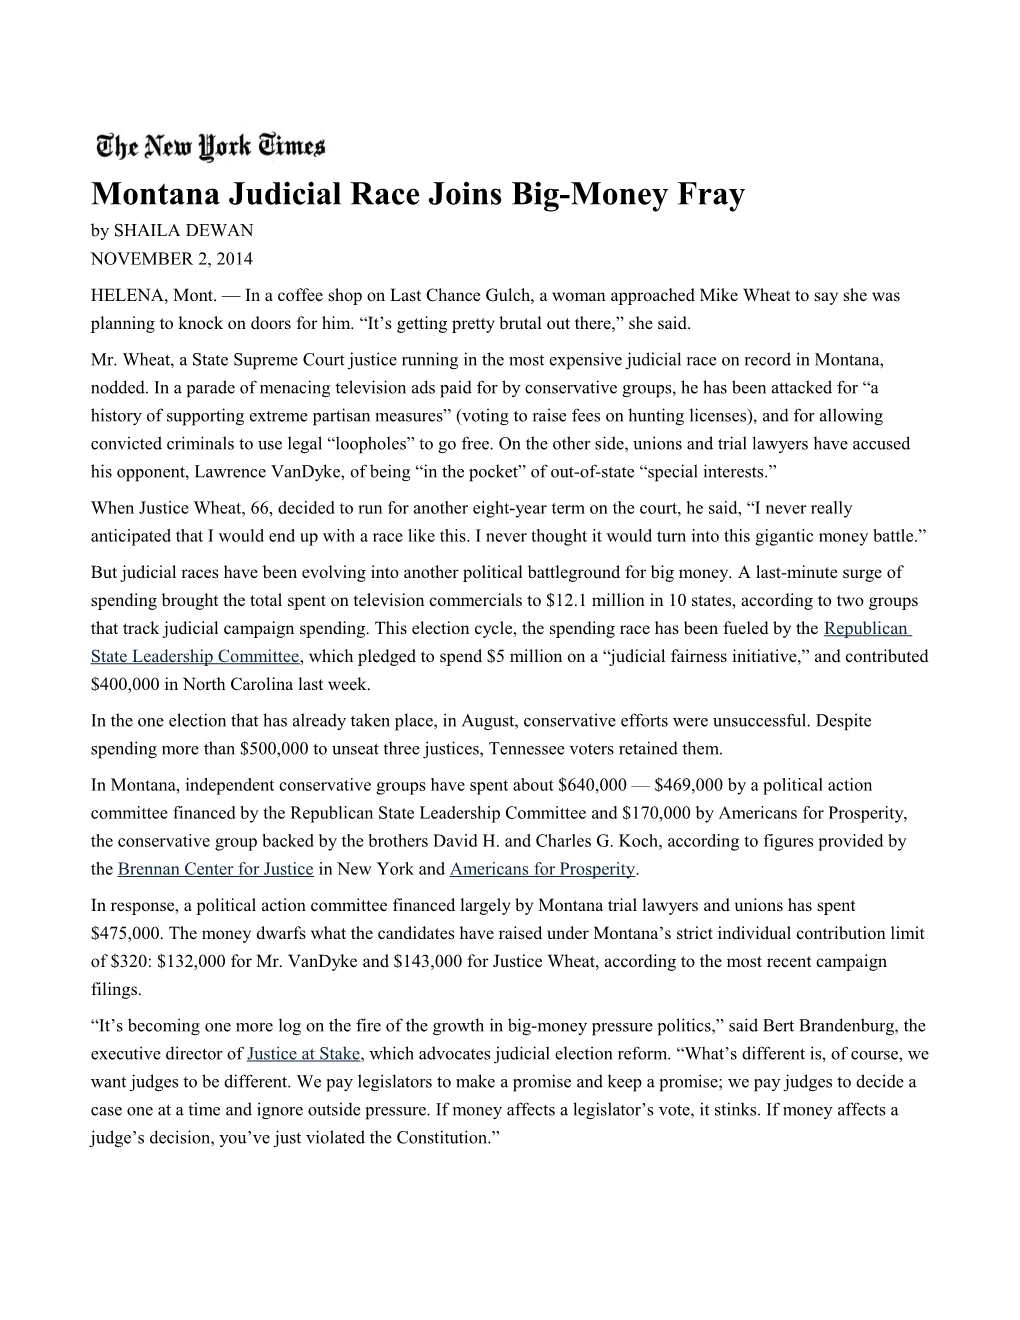 Montana Judicial Race Joinsbig-Moneyfray